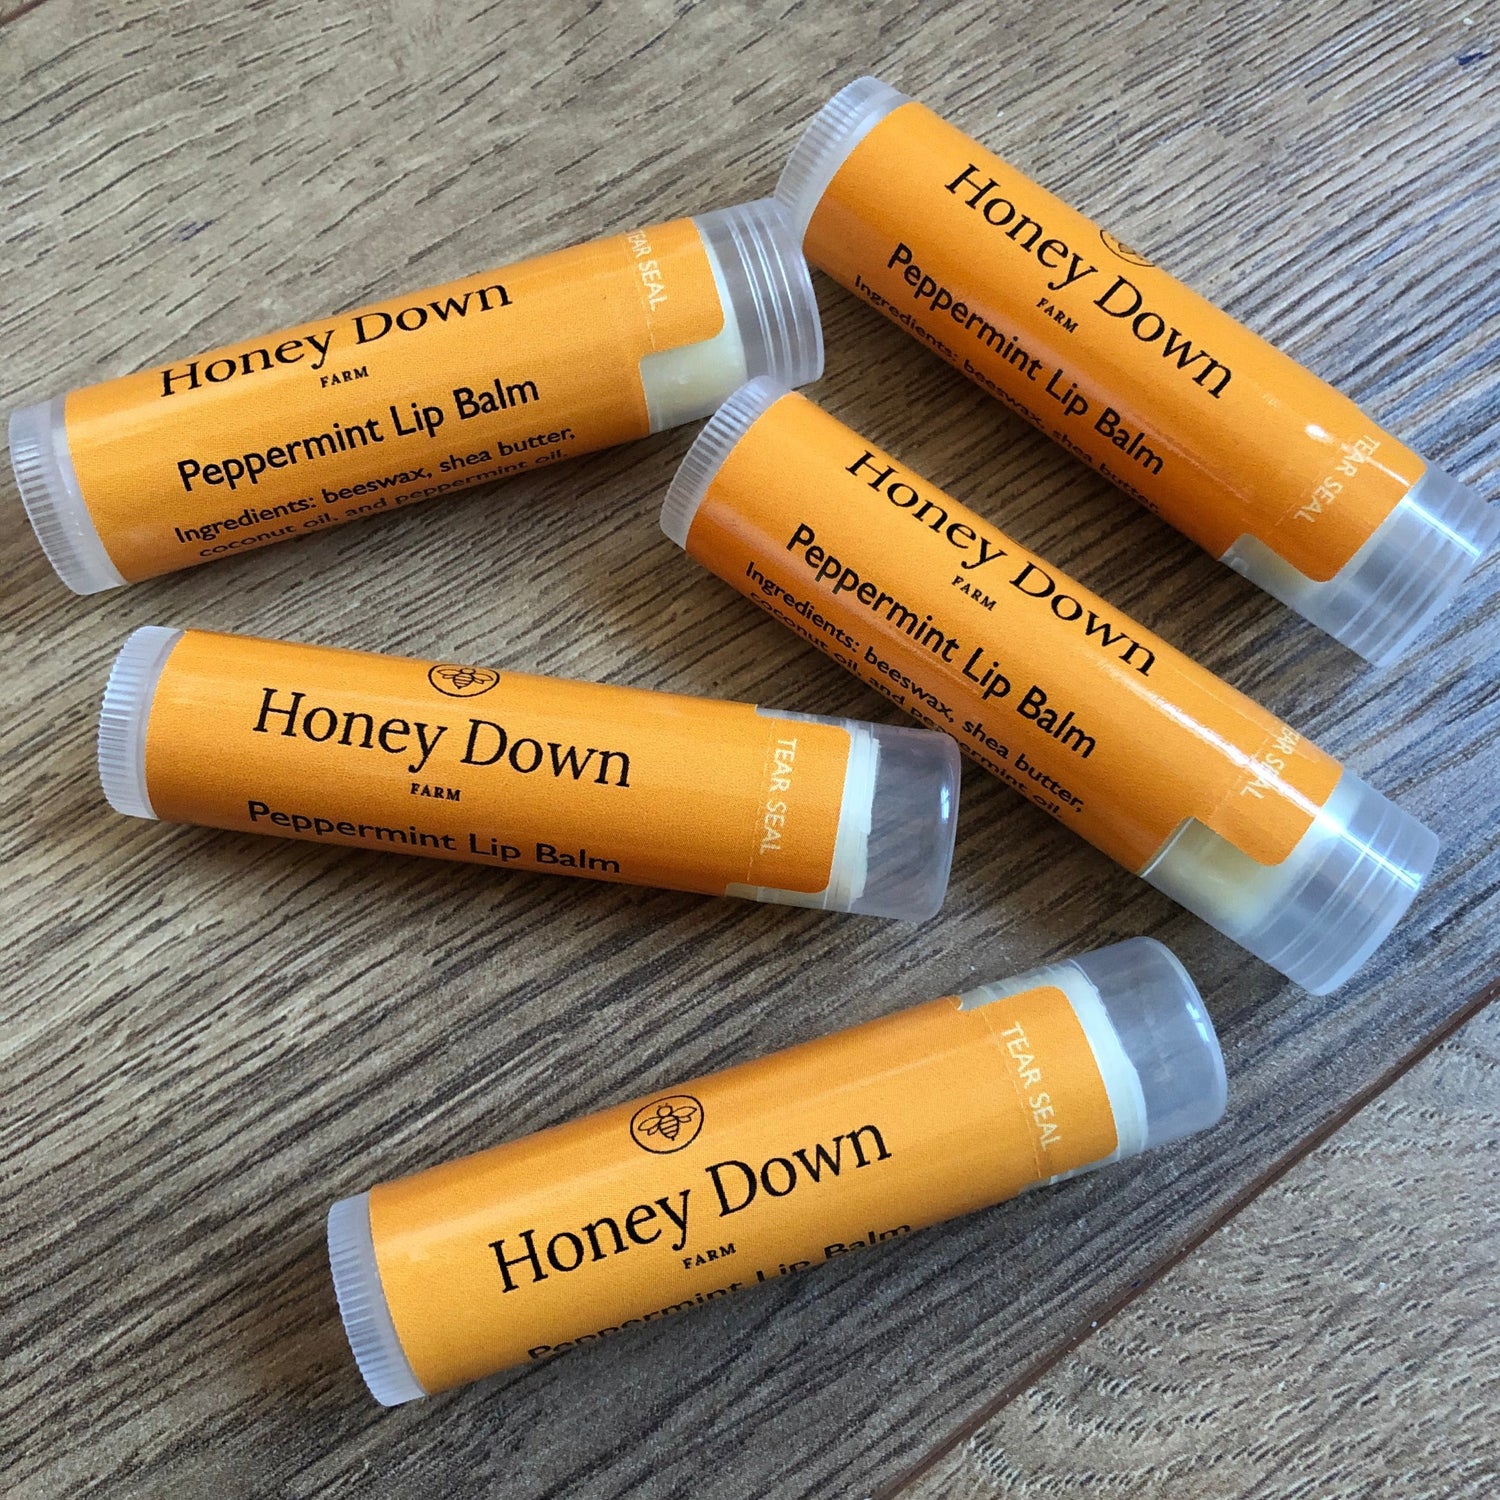 Honey Down Farm Beeswax Lip Balm